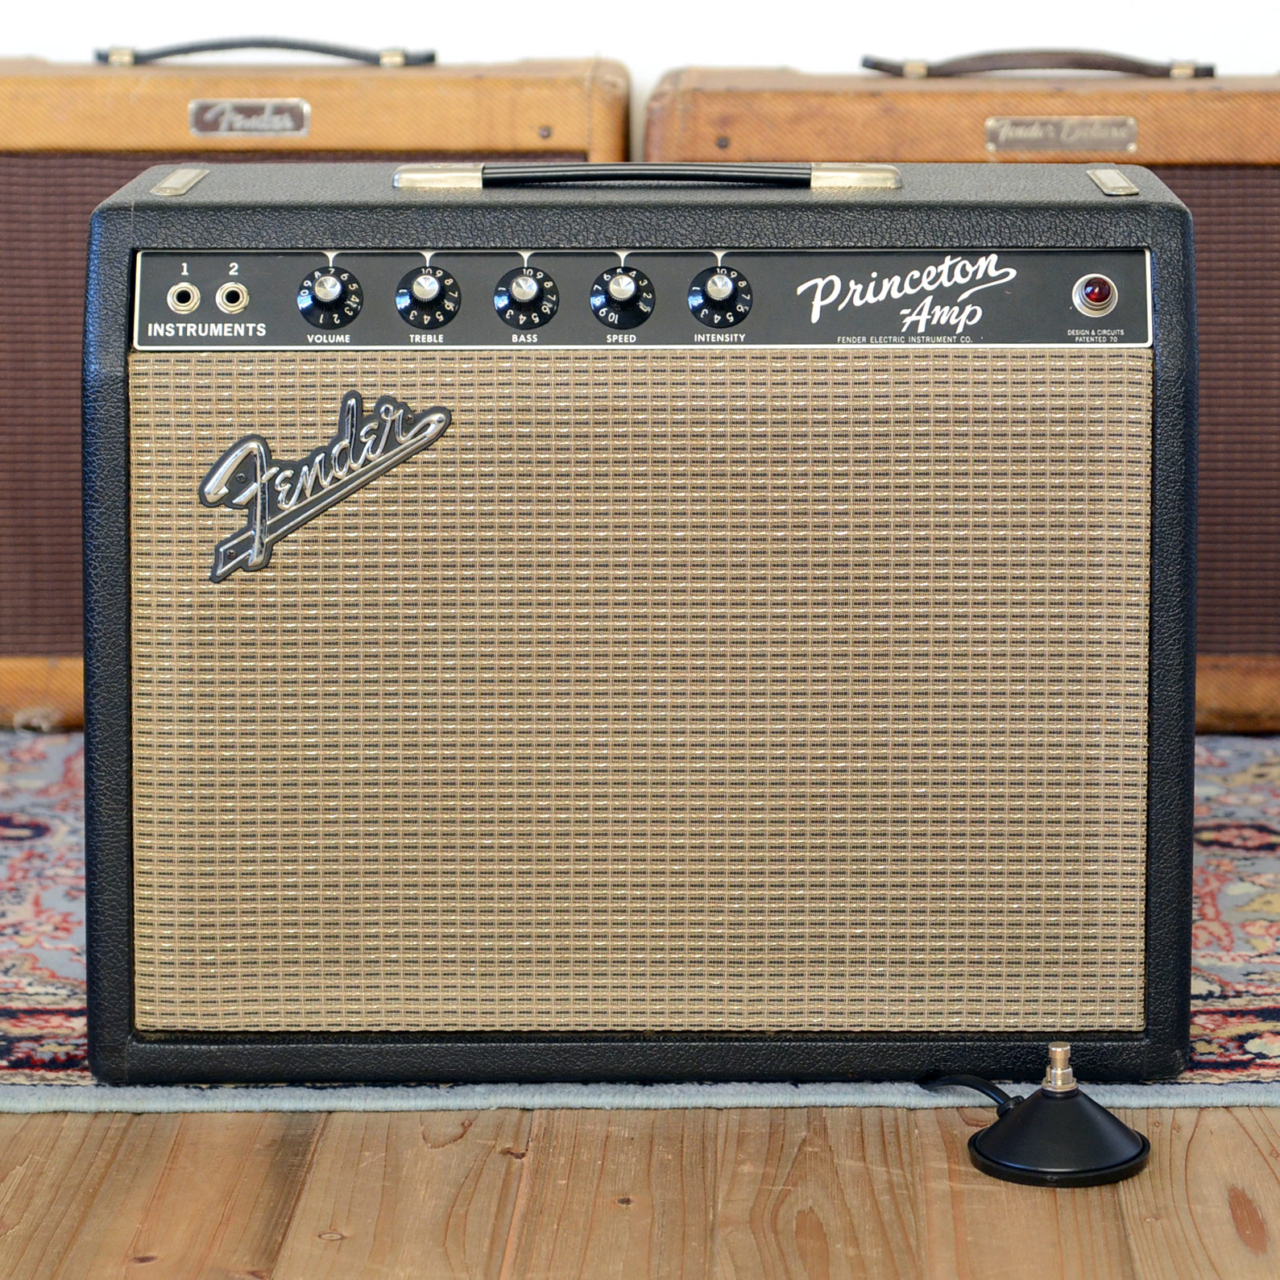 Vintage 1965 Fender Princeton Amplifier